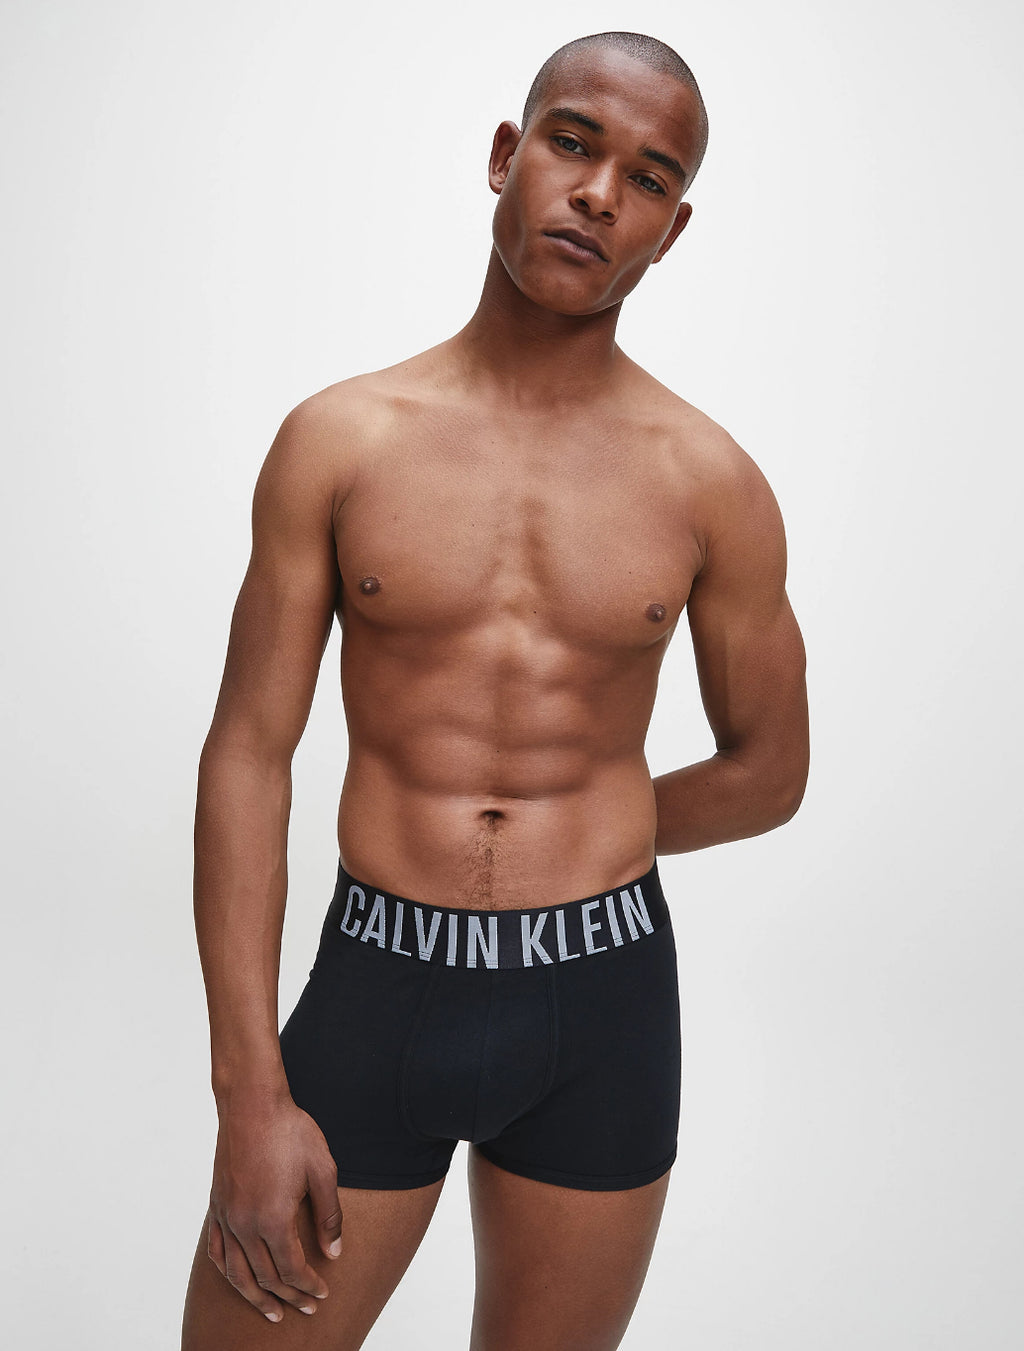 Mens Calvin Klein black Cotton-Stretch Intense Power Briefs (Pack of 2)